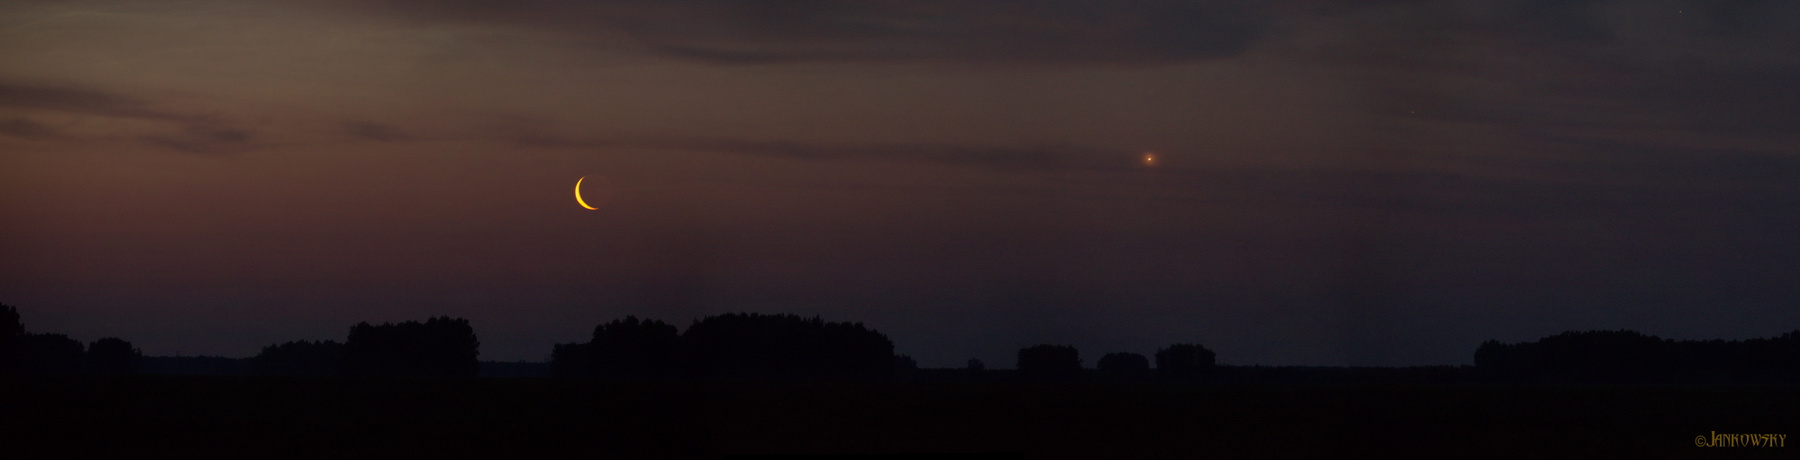 Восход двух серпов над  полем Астровыезд Восход убывающей Луны луна венера серп темное небо поле астрономия панорама омск